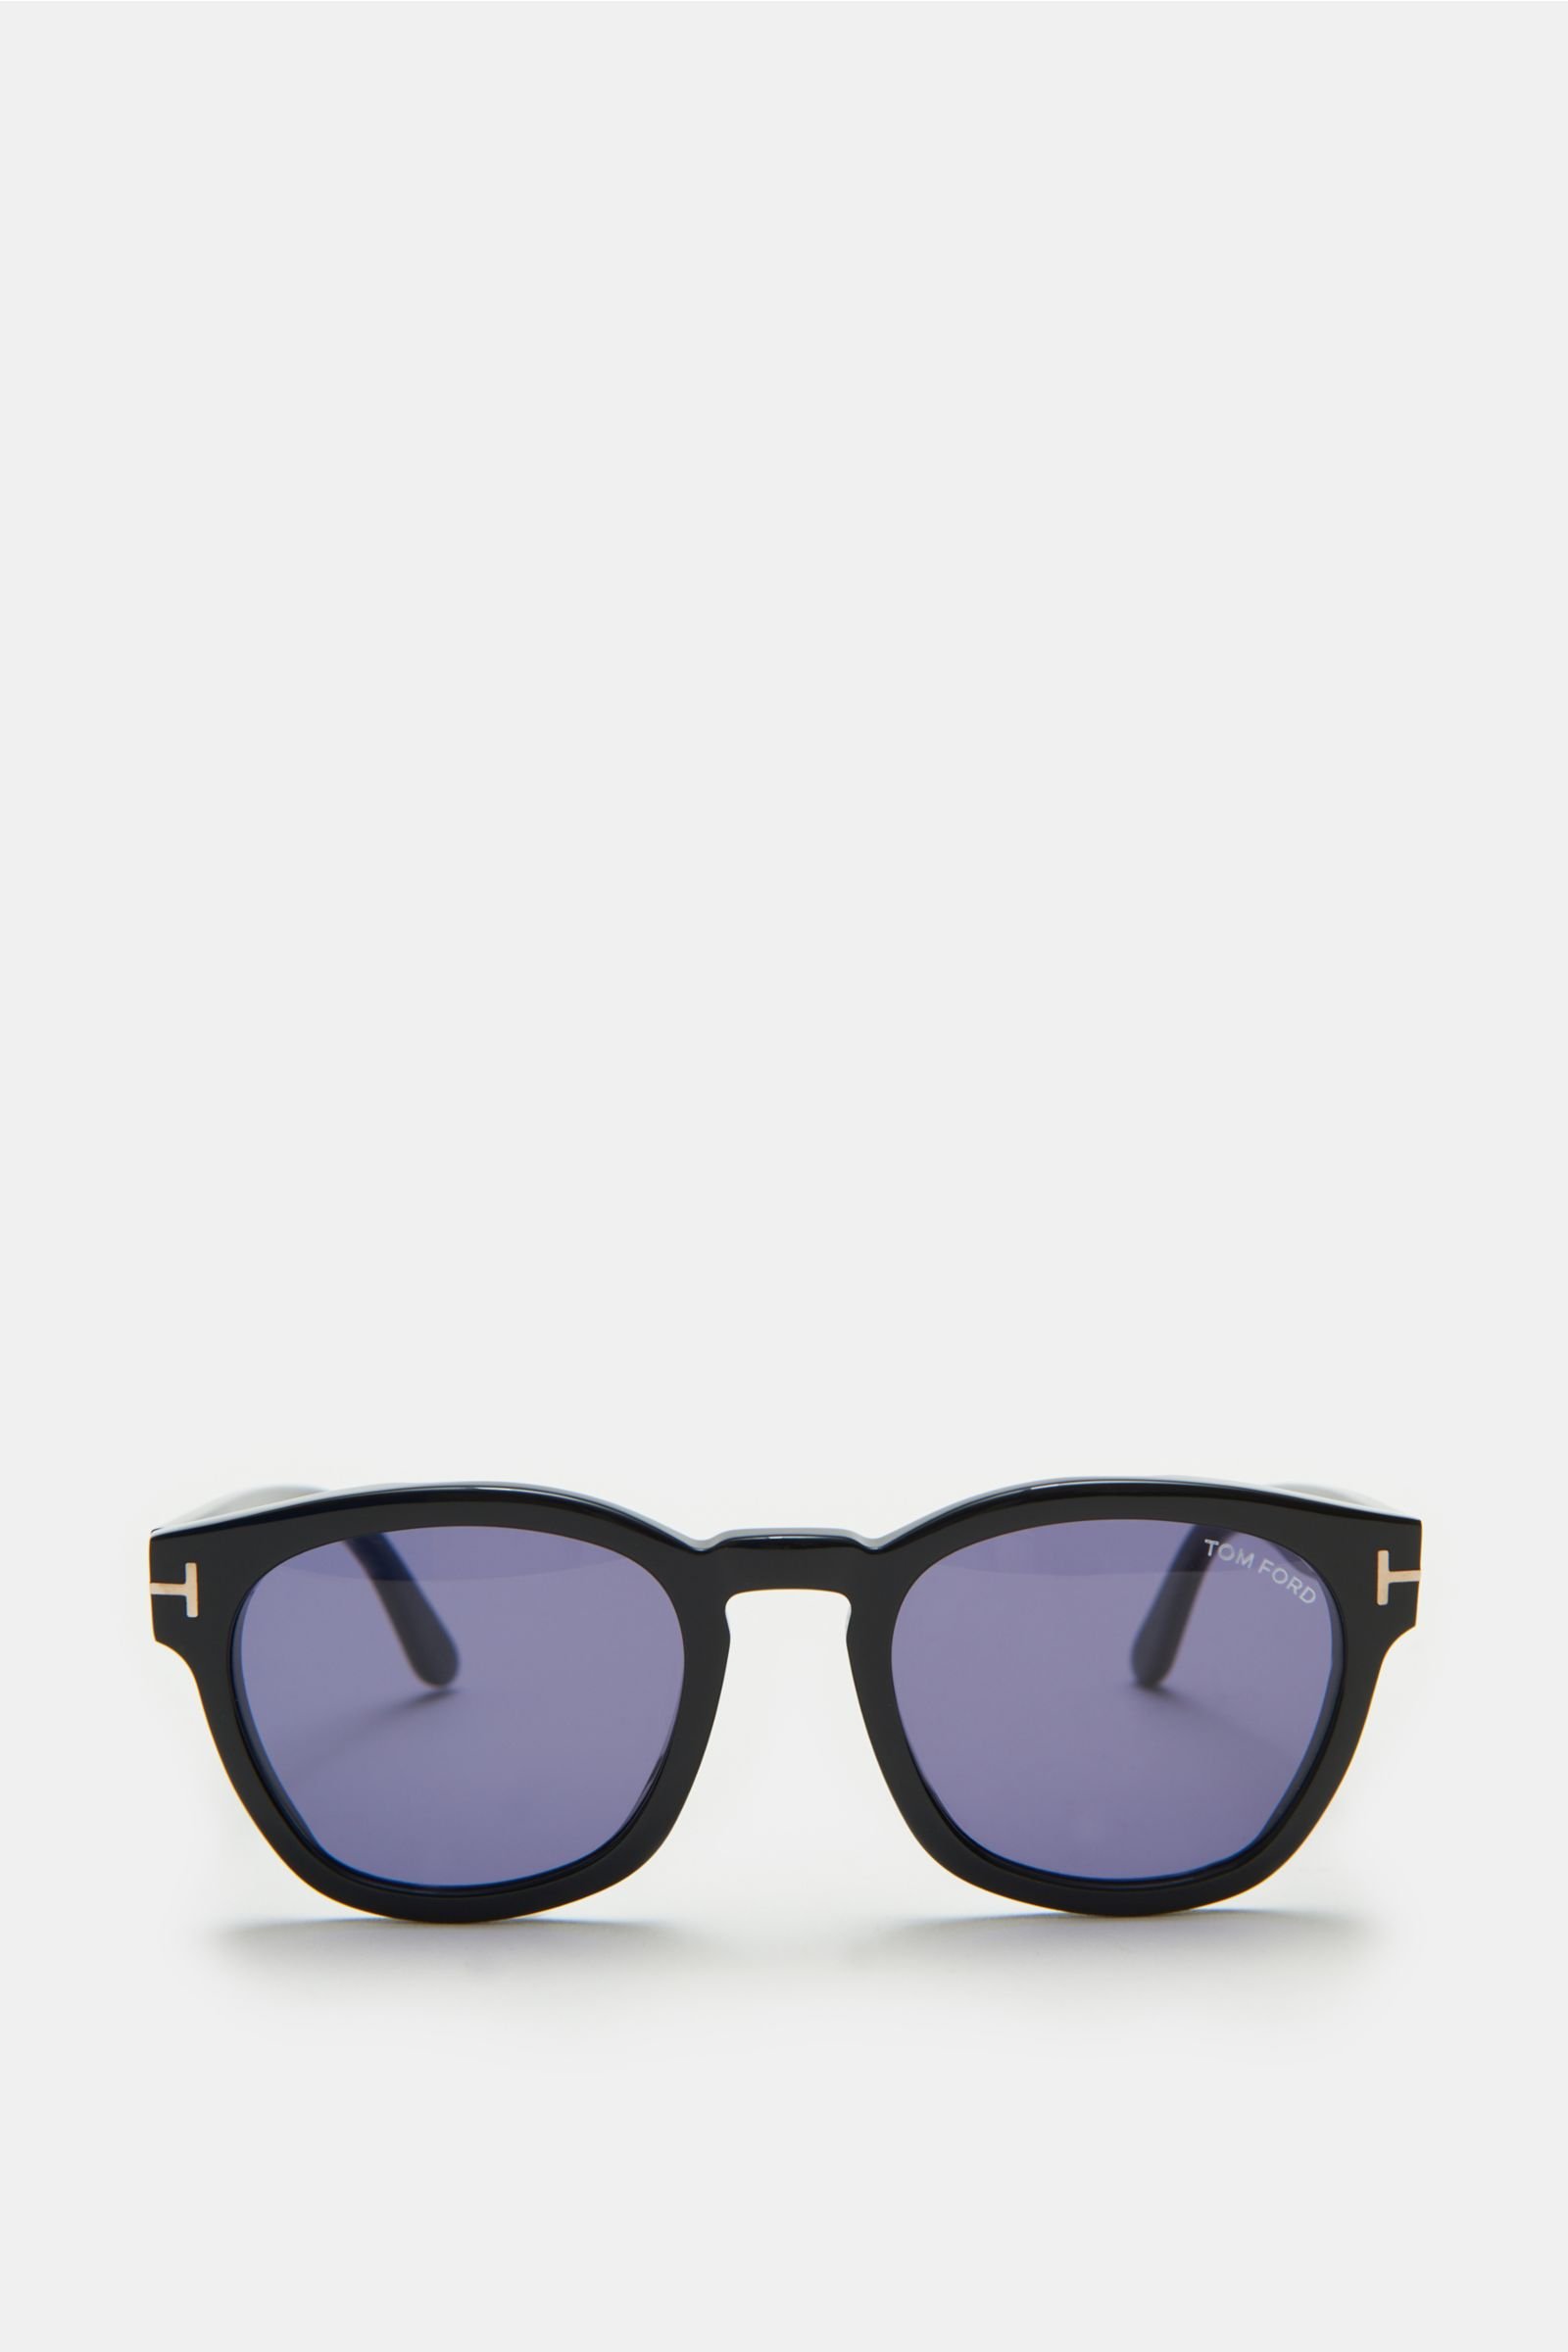 Sonnenbrille 'Bryan' schwarz/blau